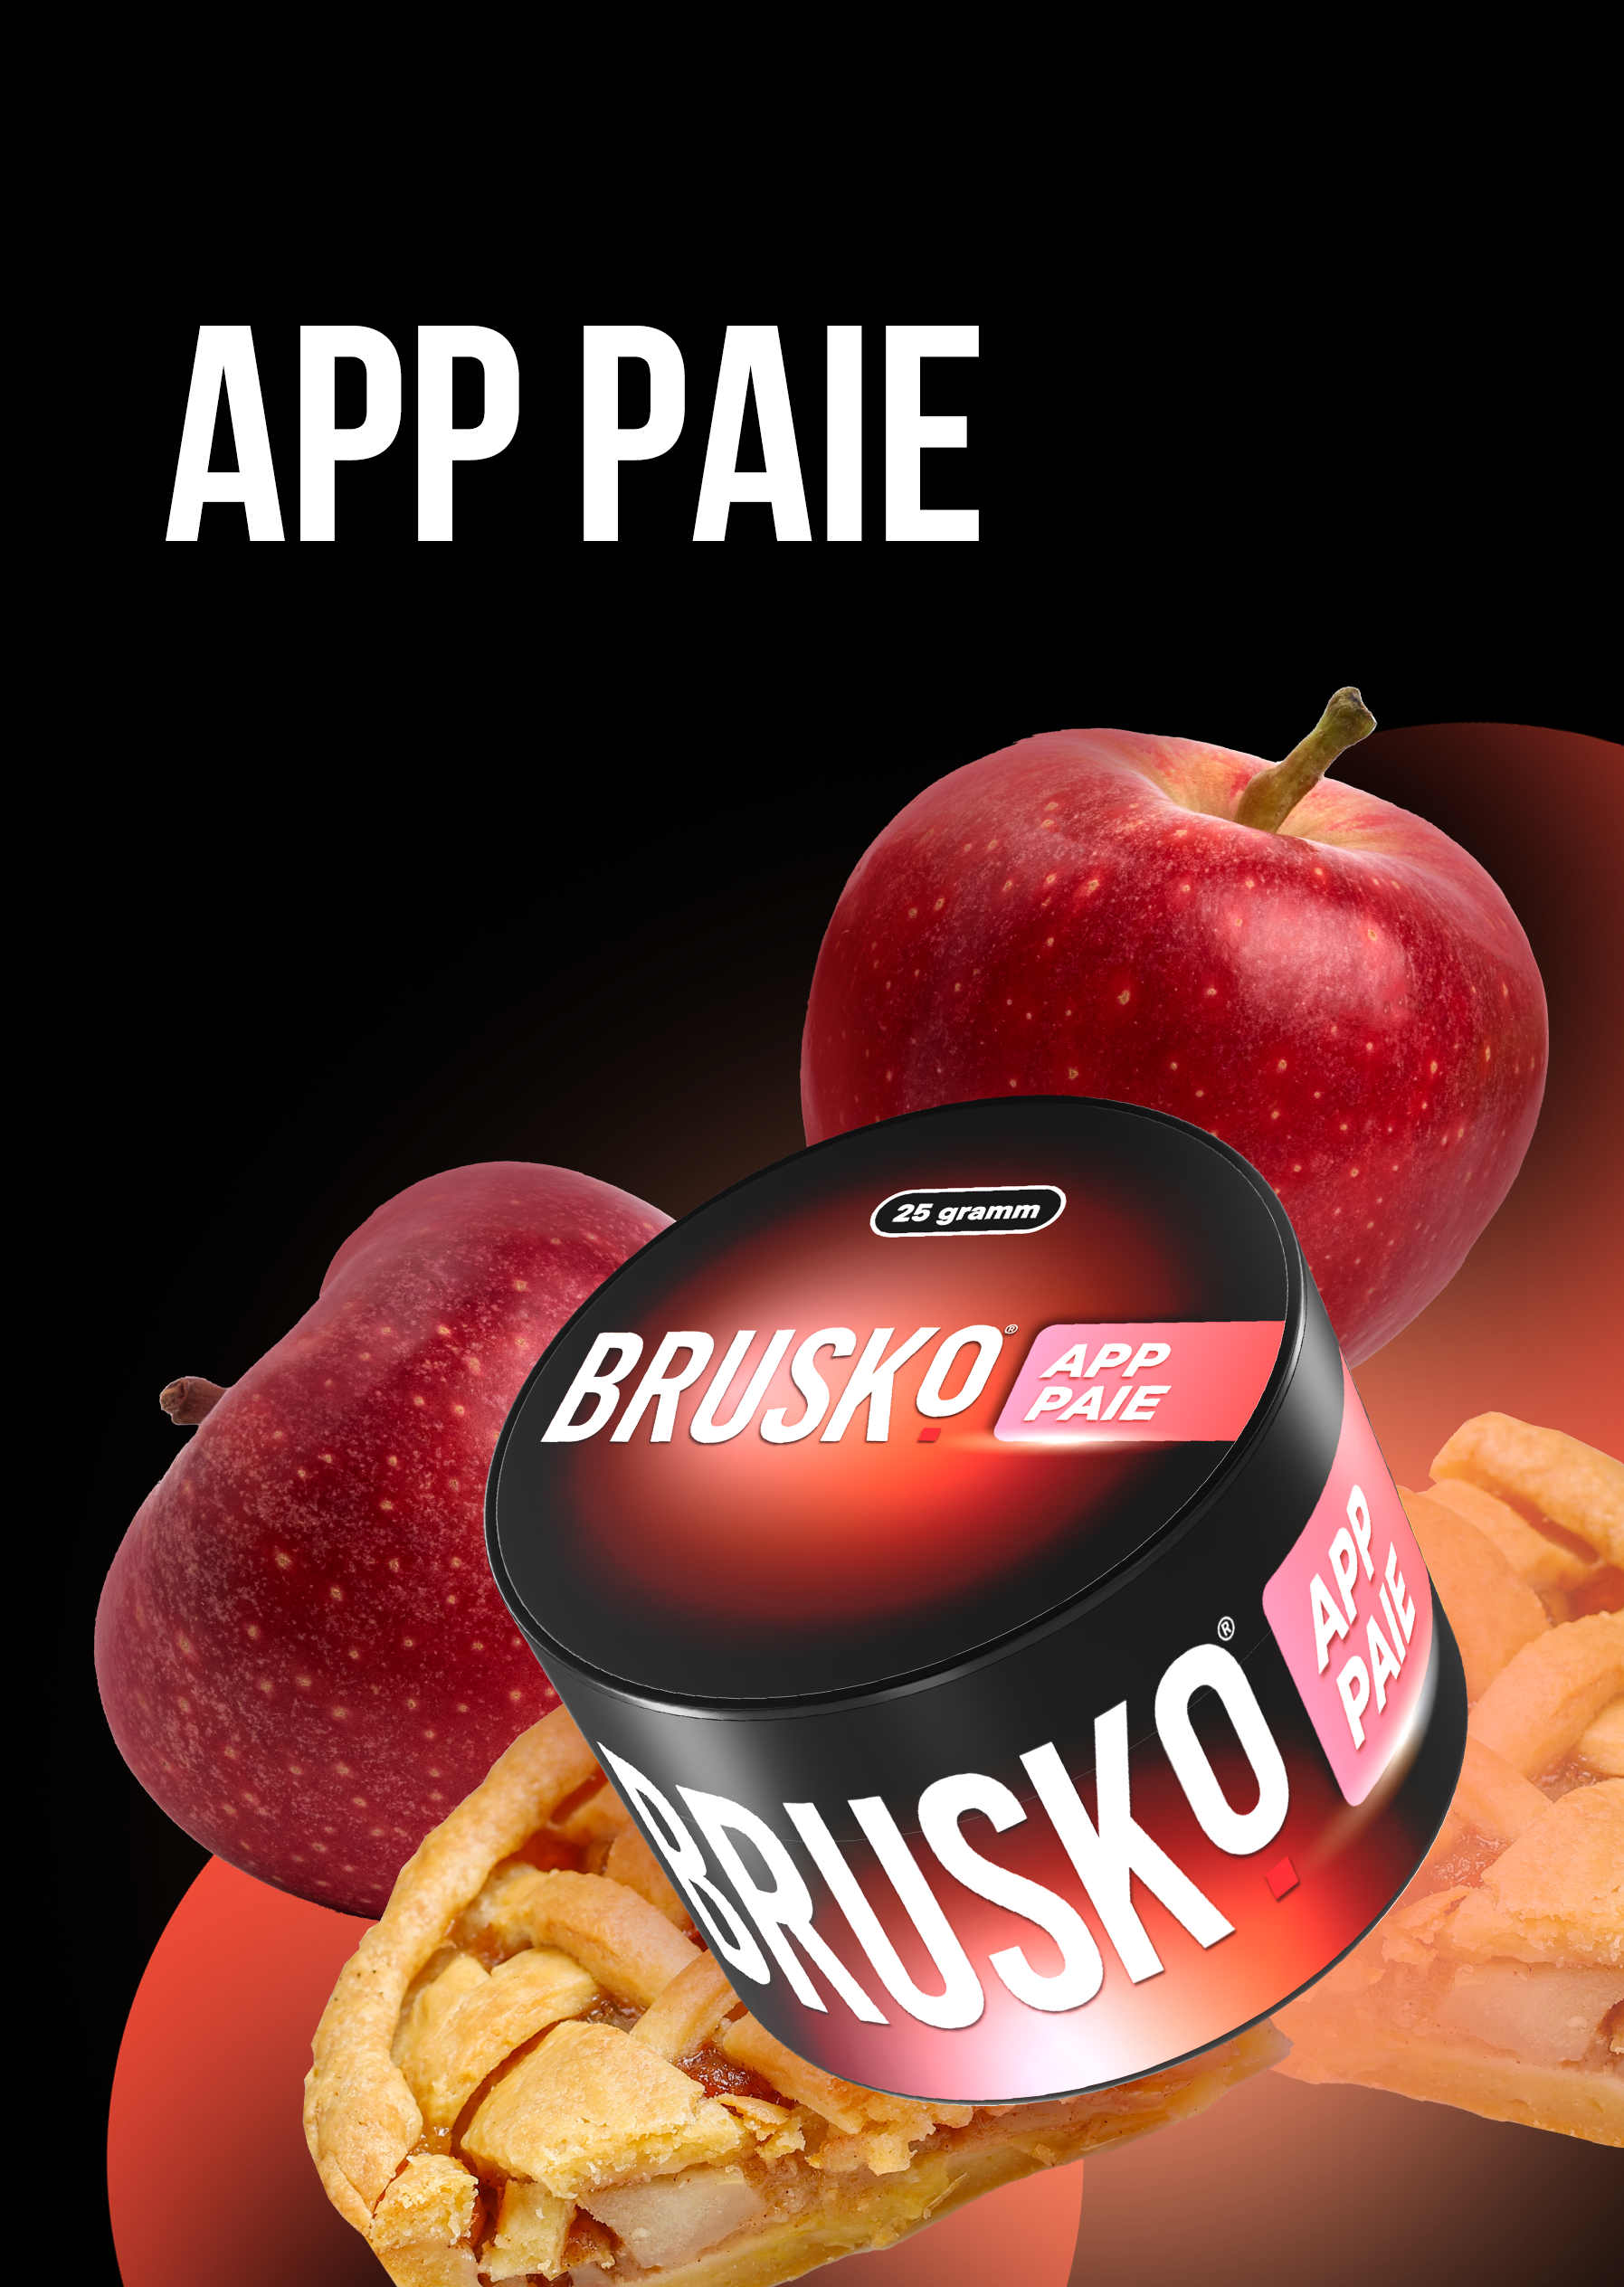 Brusko | App Paie | 25g